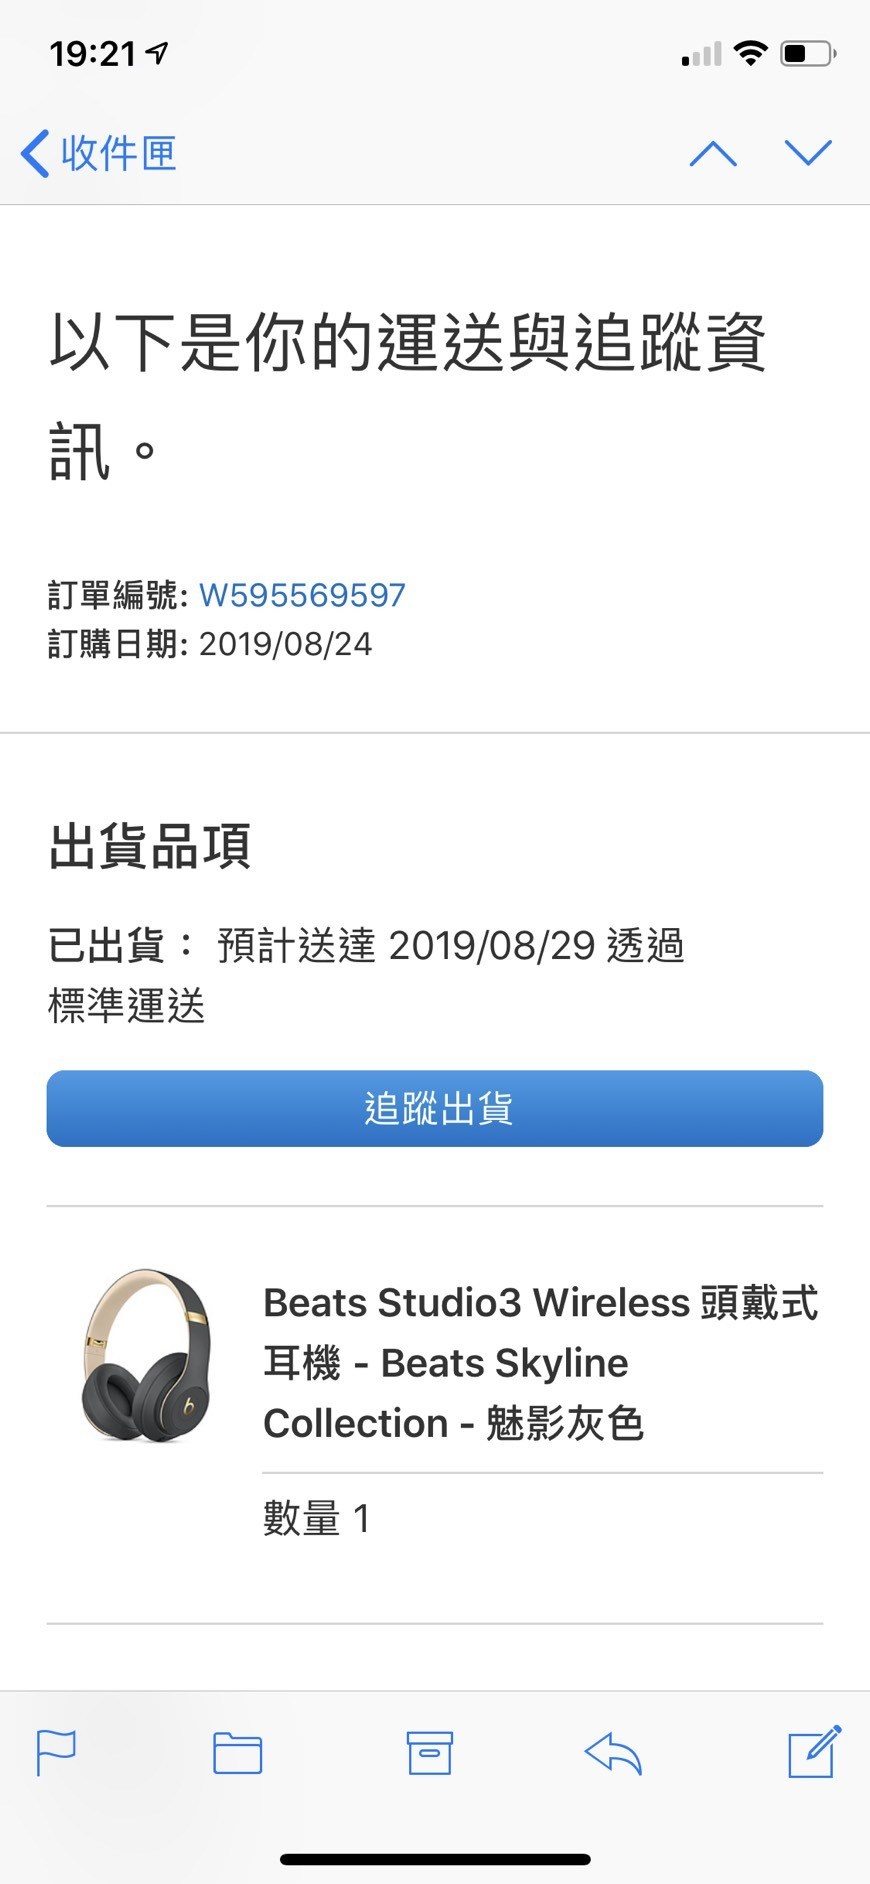 出售】Beats Studio3 Wireless 無線藍芽頭戴式耳機魅影灰@ACG二手交易